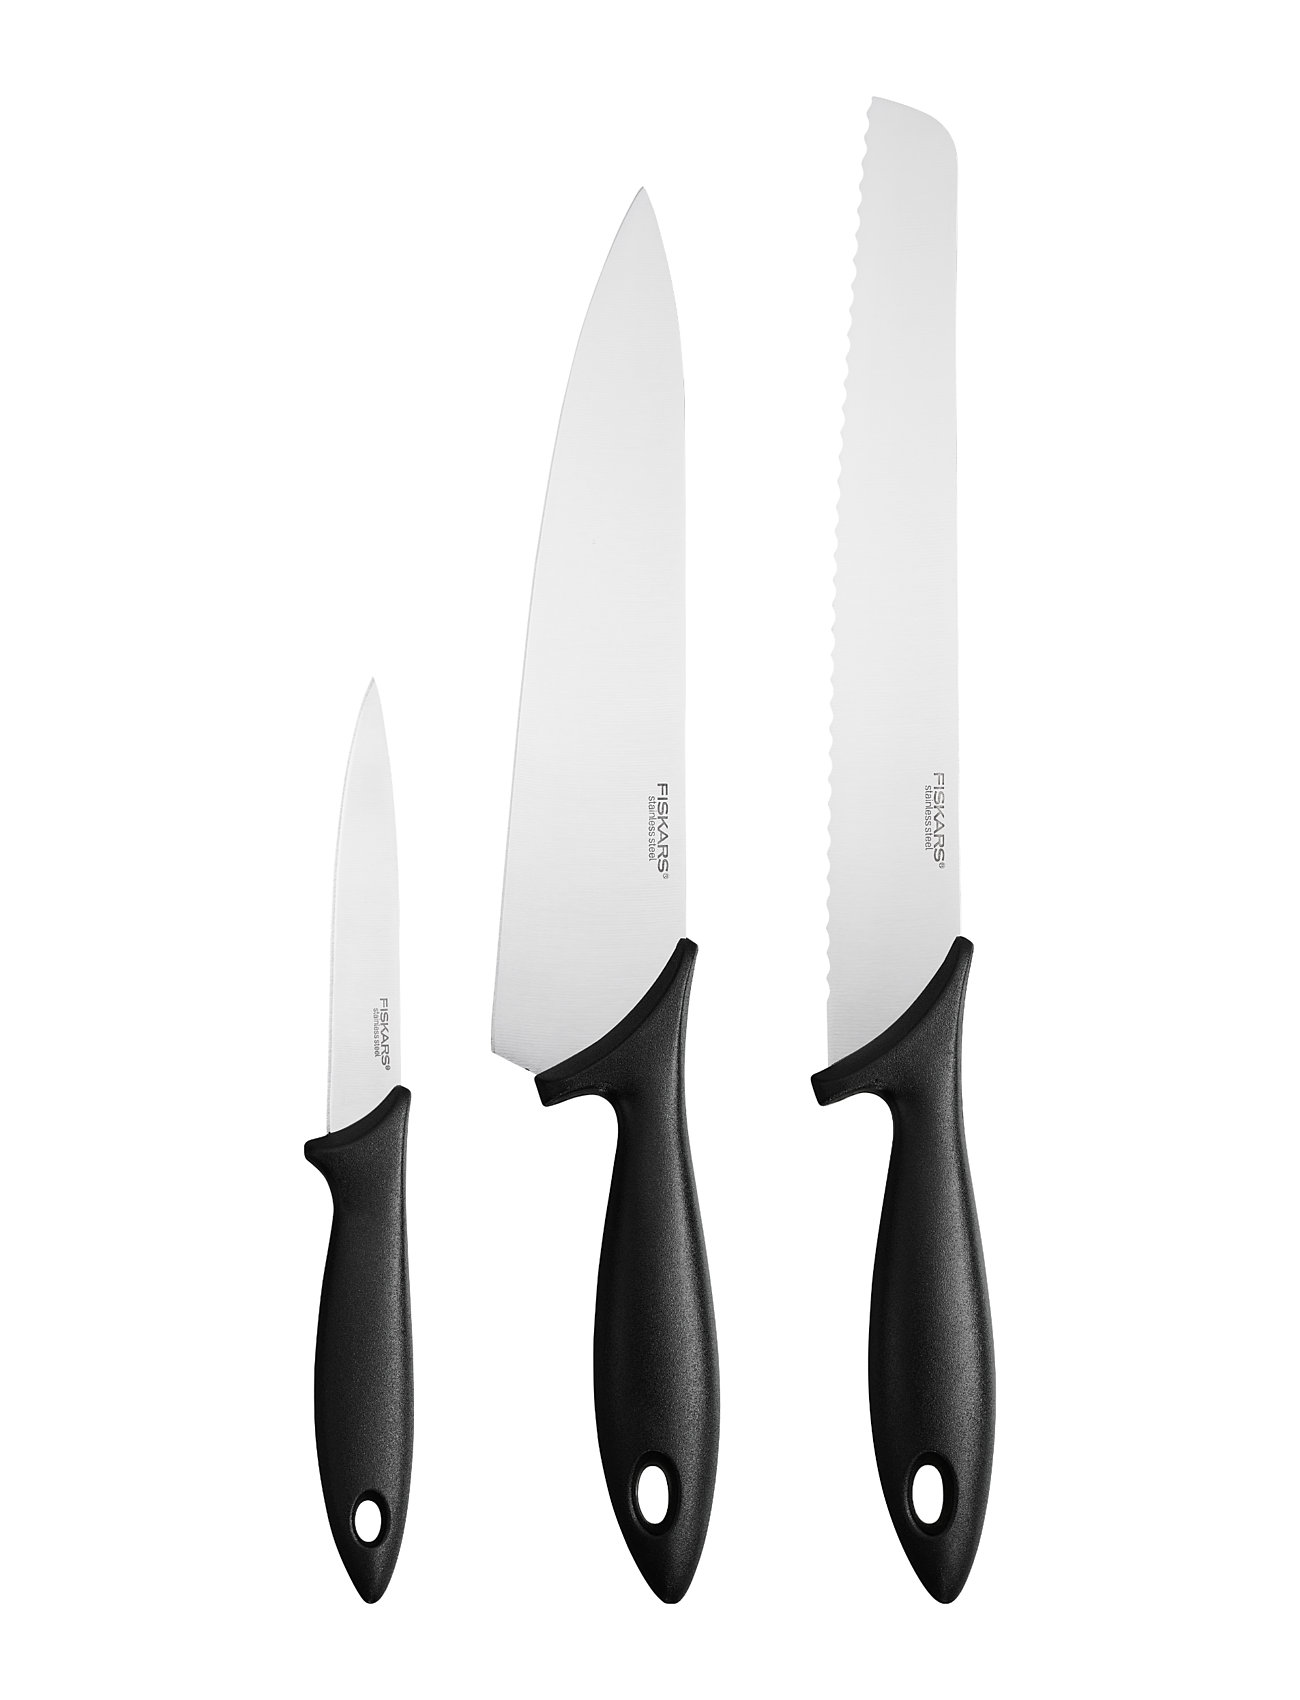 Essential Starter Set 3Pcs Home Kitchen Knives & Accessories Knife Sets Black Fiskars